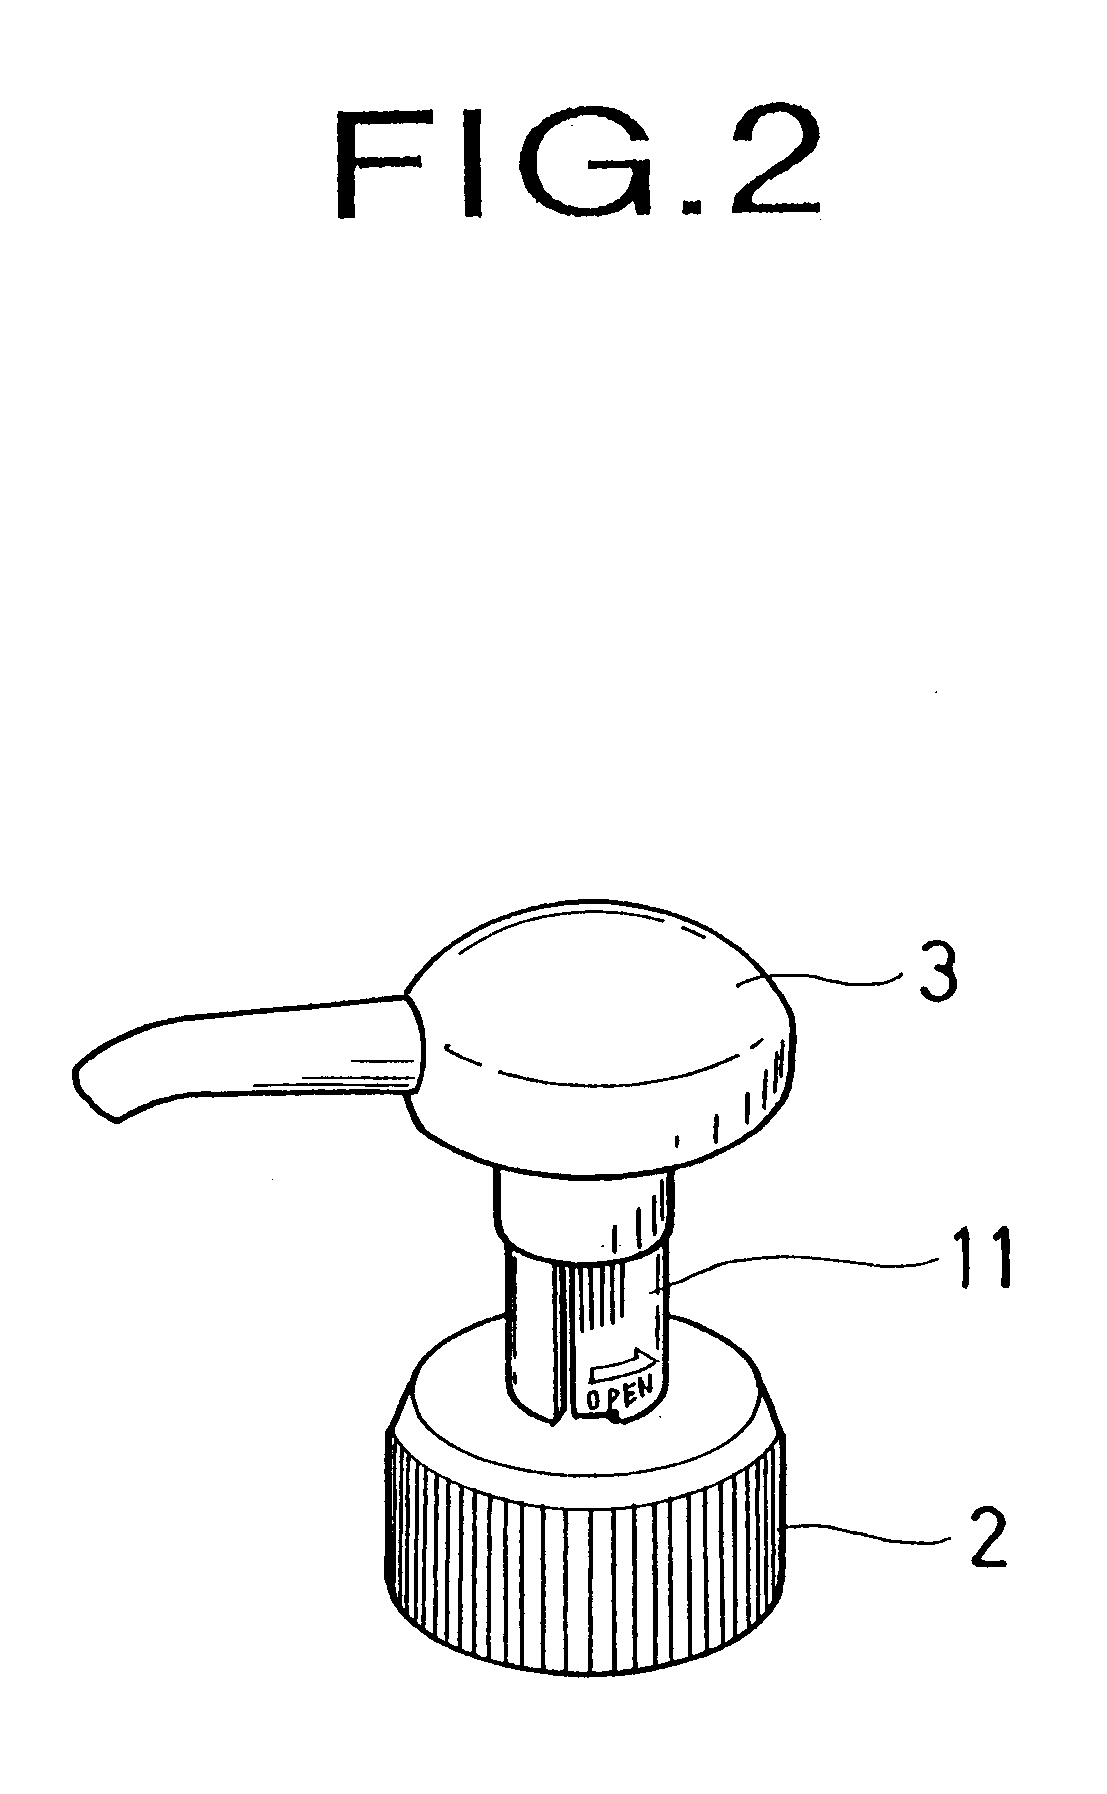 Liquid discharging apparatus